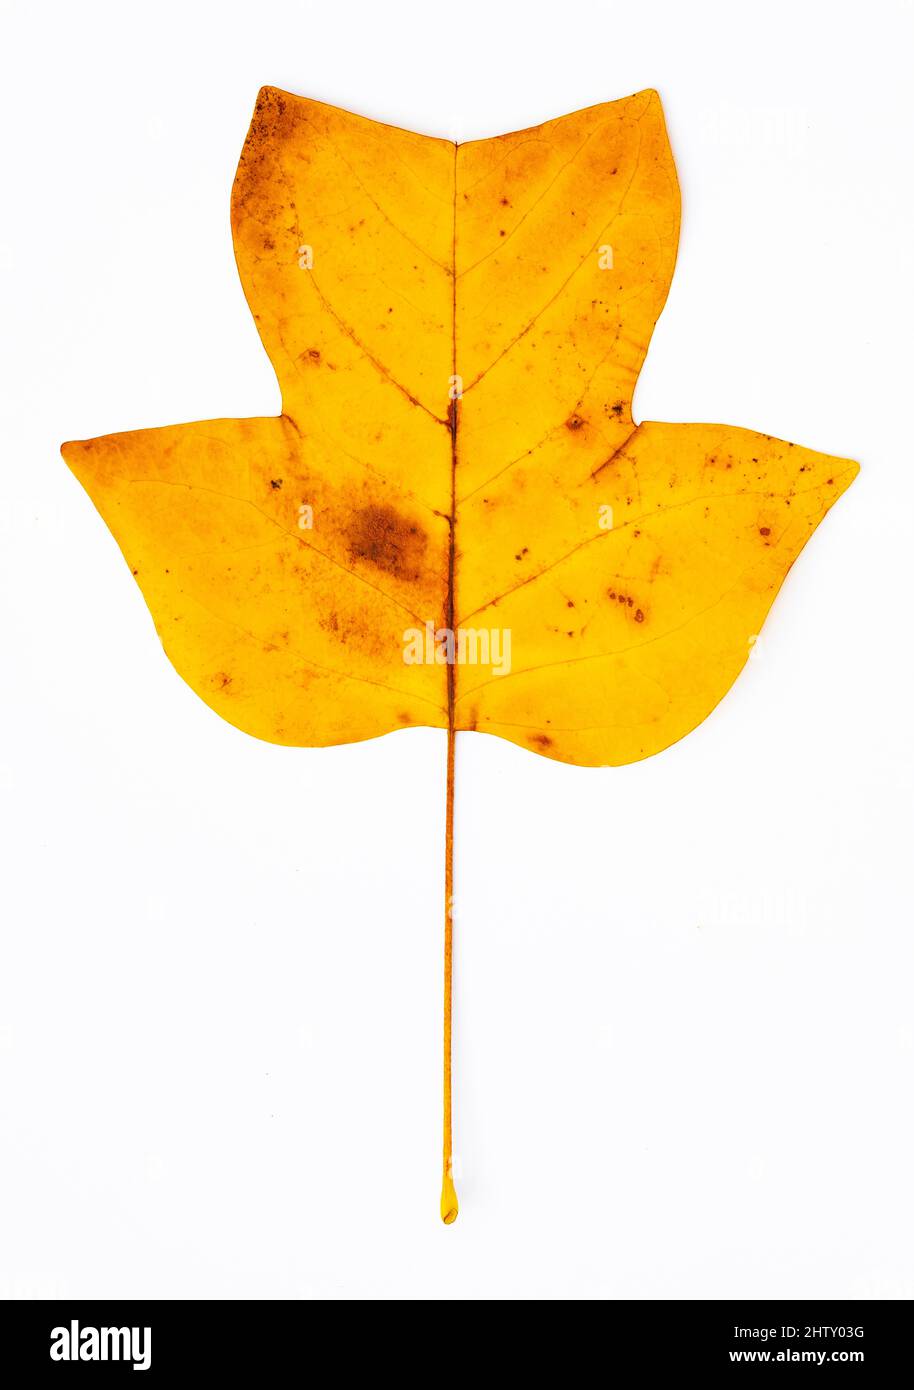 Herbstfarbener Tulpenbaum (Liriodendron tulipifera) Blatt, Tulpenbaum, Magnolienfamilie (Magnoliaceae), weißer Hintergrund, Studioaufnahme Stockfoto